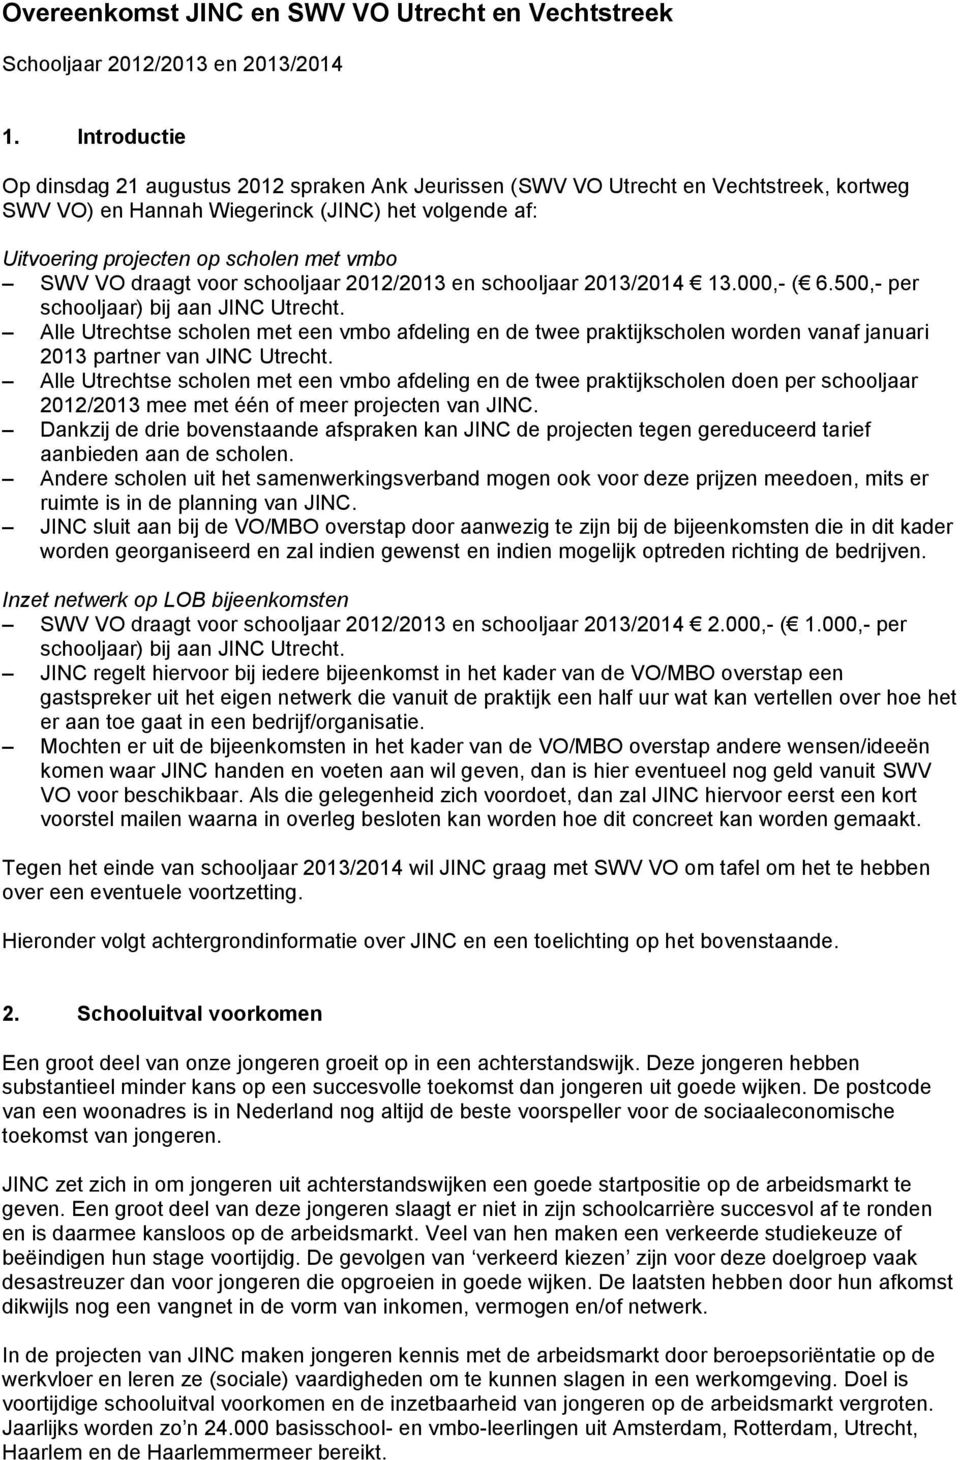 VO draagt voor schooljaar 2012/2013 en schooljaar 2013/2014 13.000,- ( 6.500,- per schooljaar) bij aan JINC Utrecht.